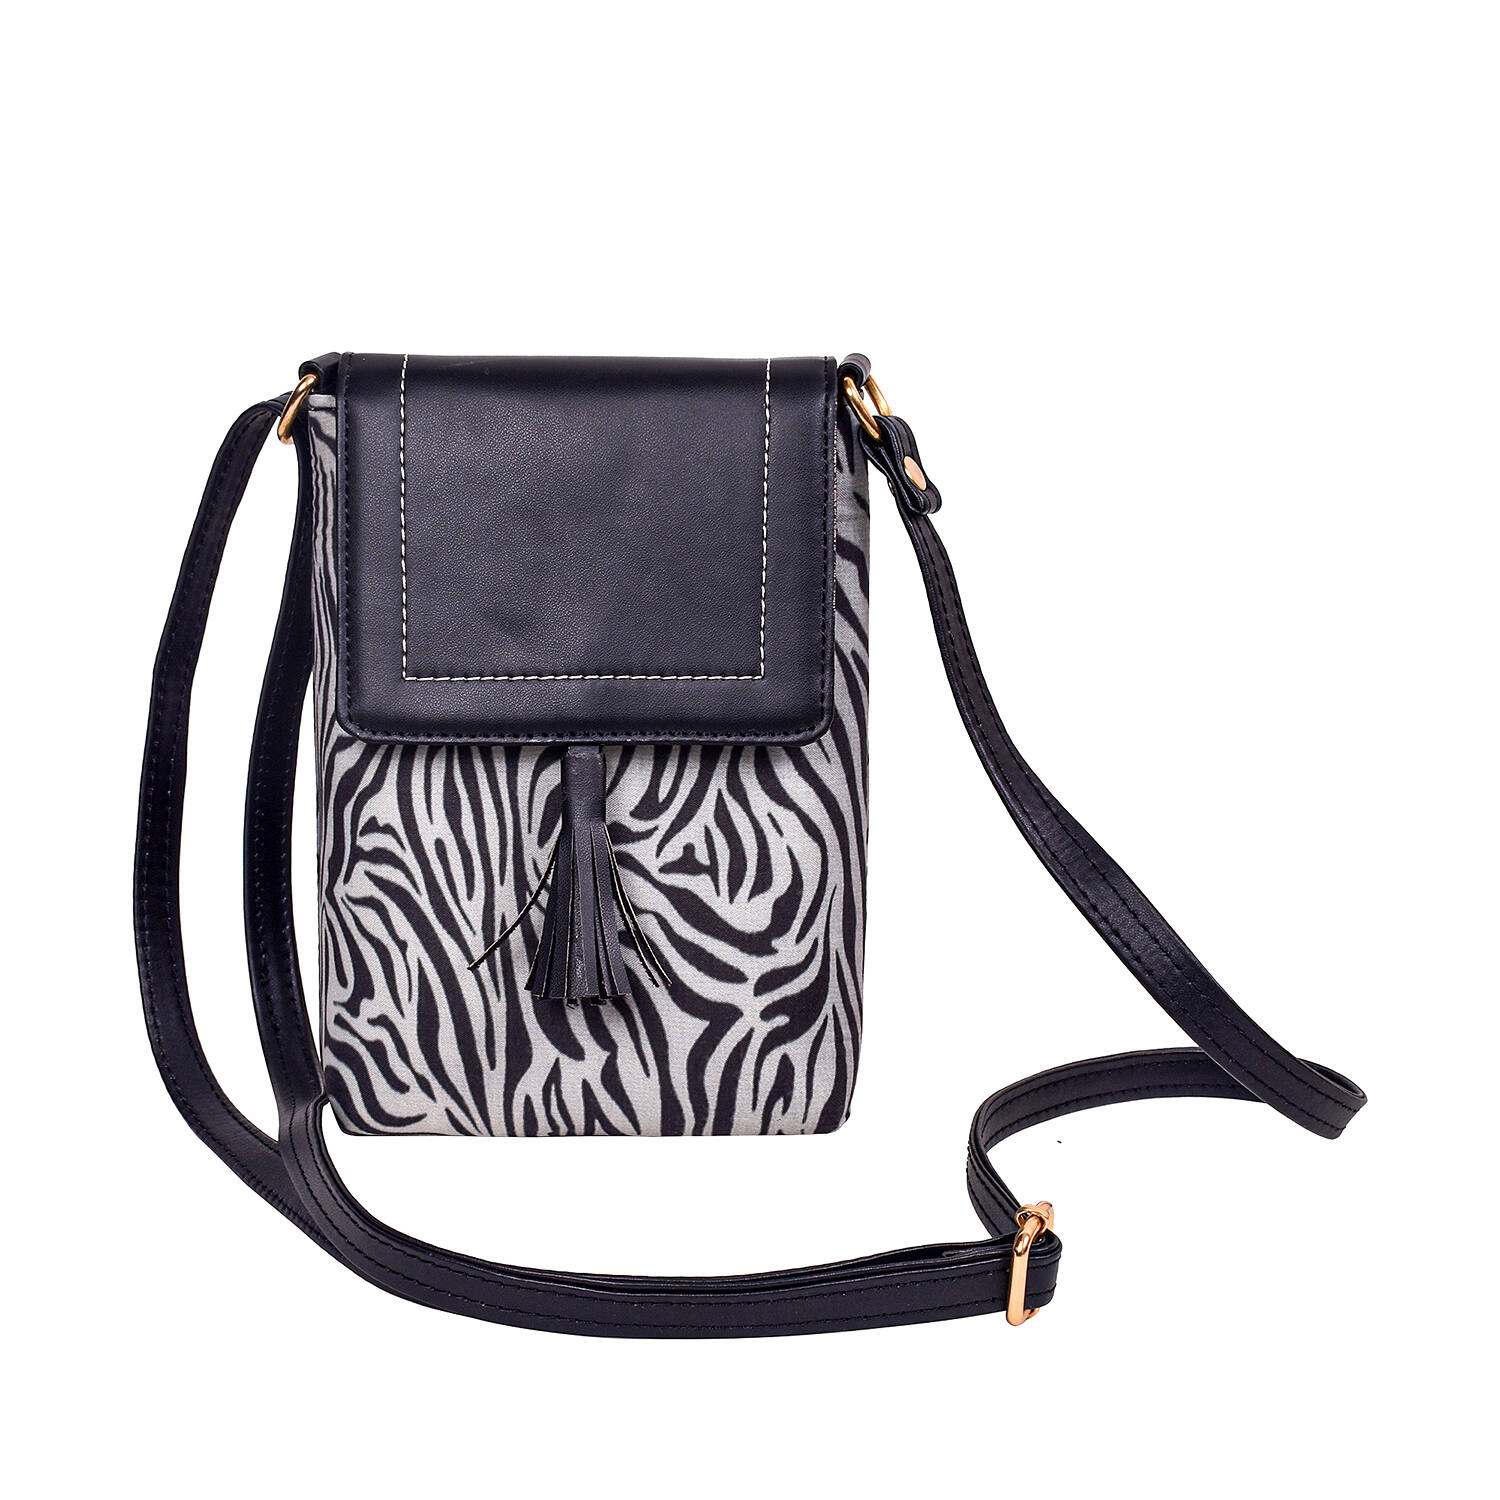 Zebra Bag · A Shoulder Bag · Creation by selene